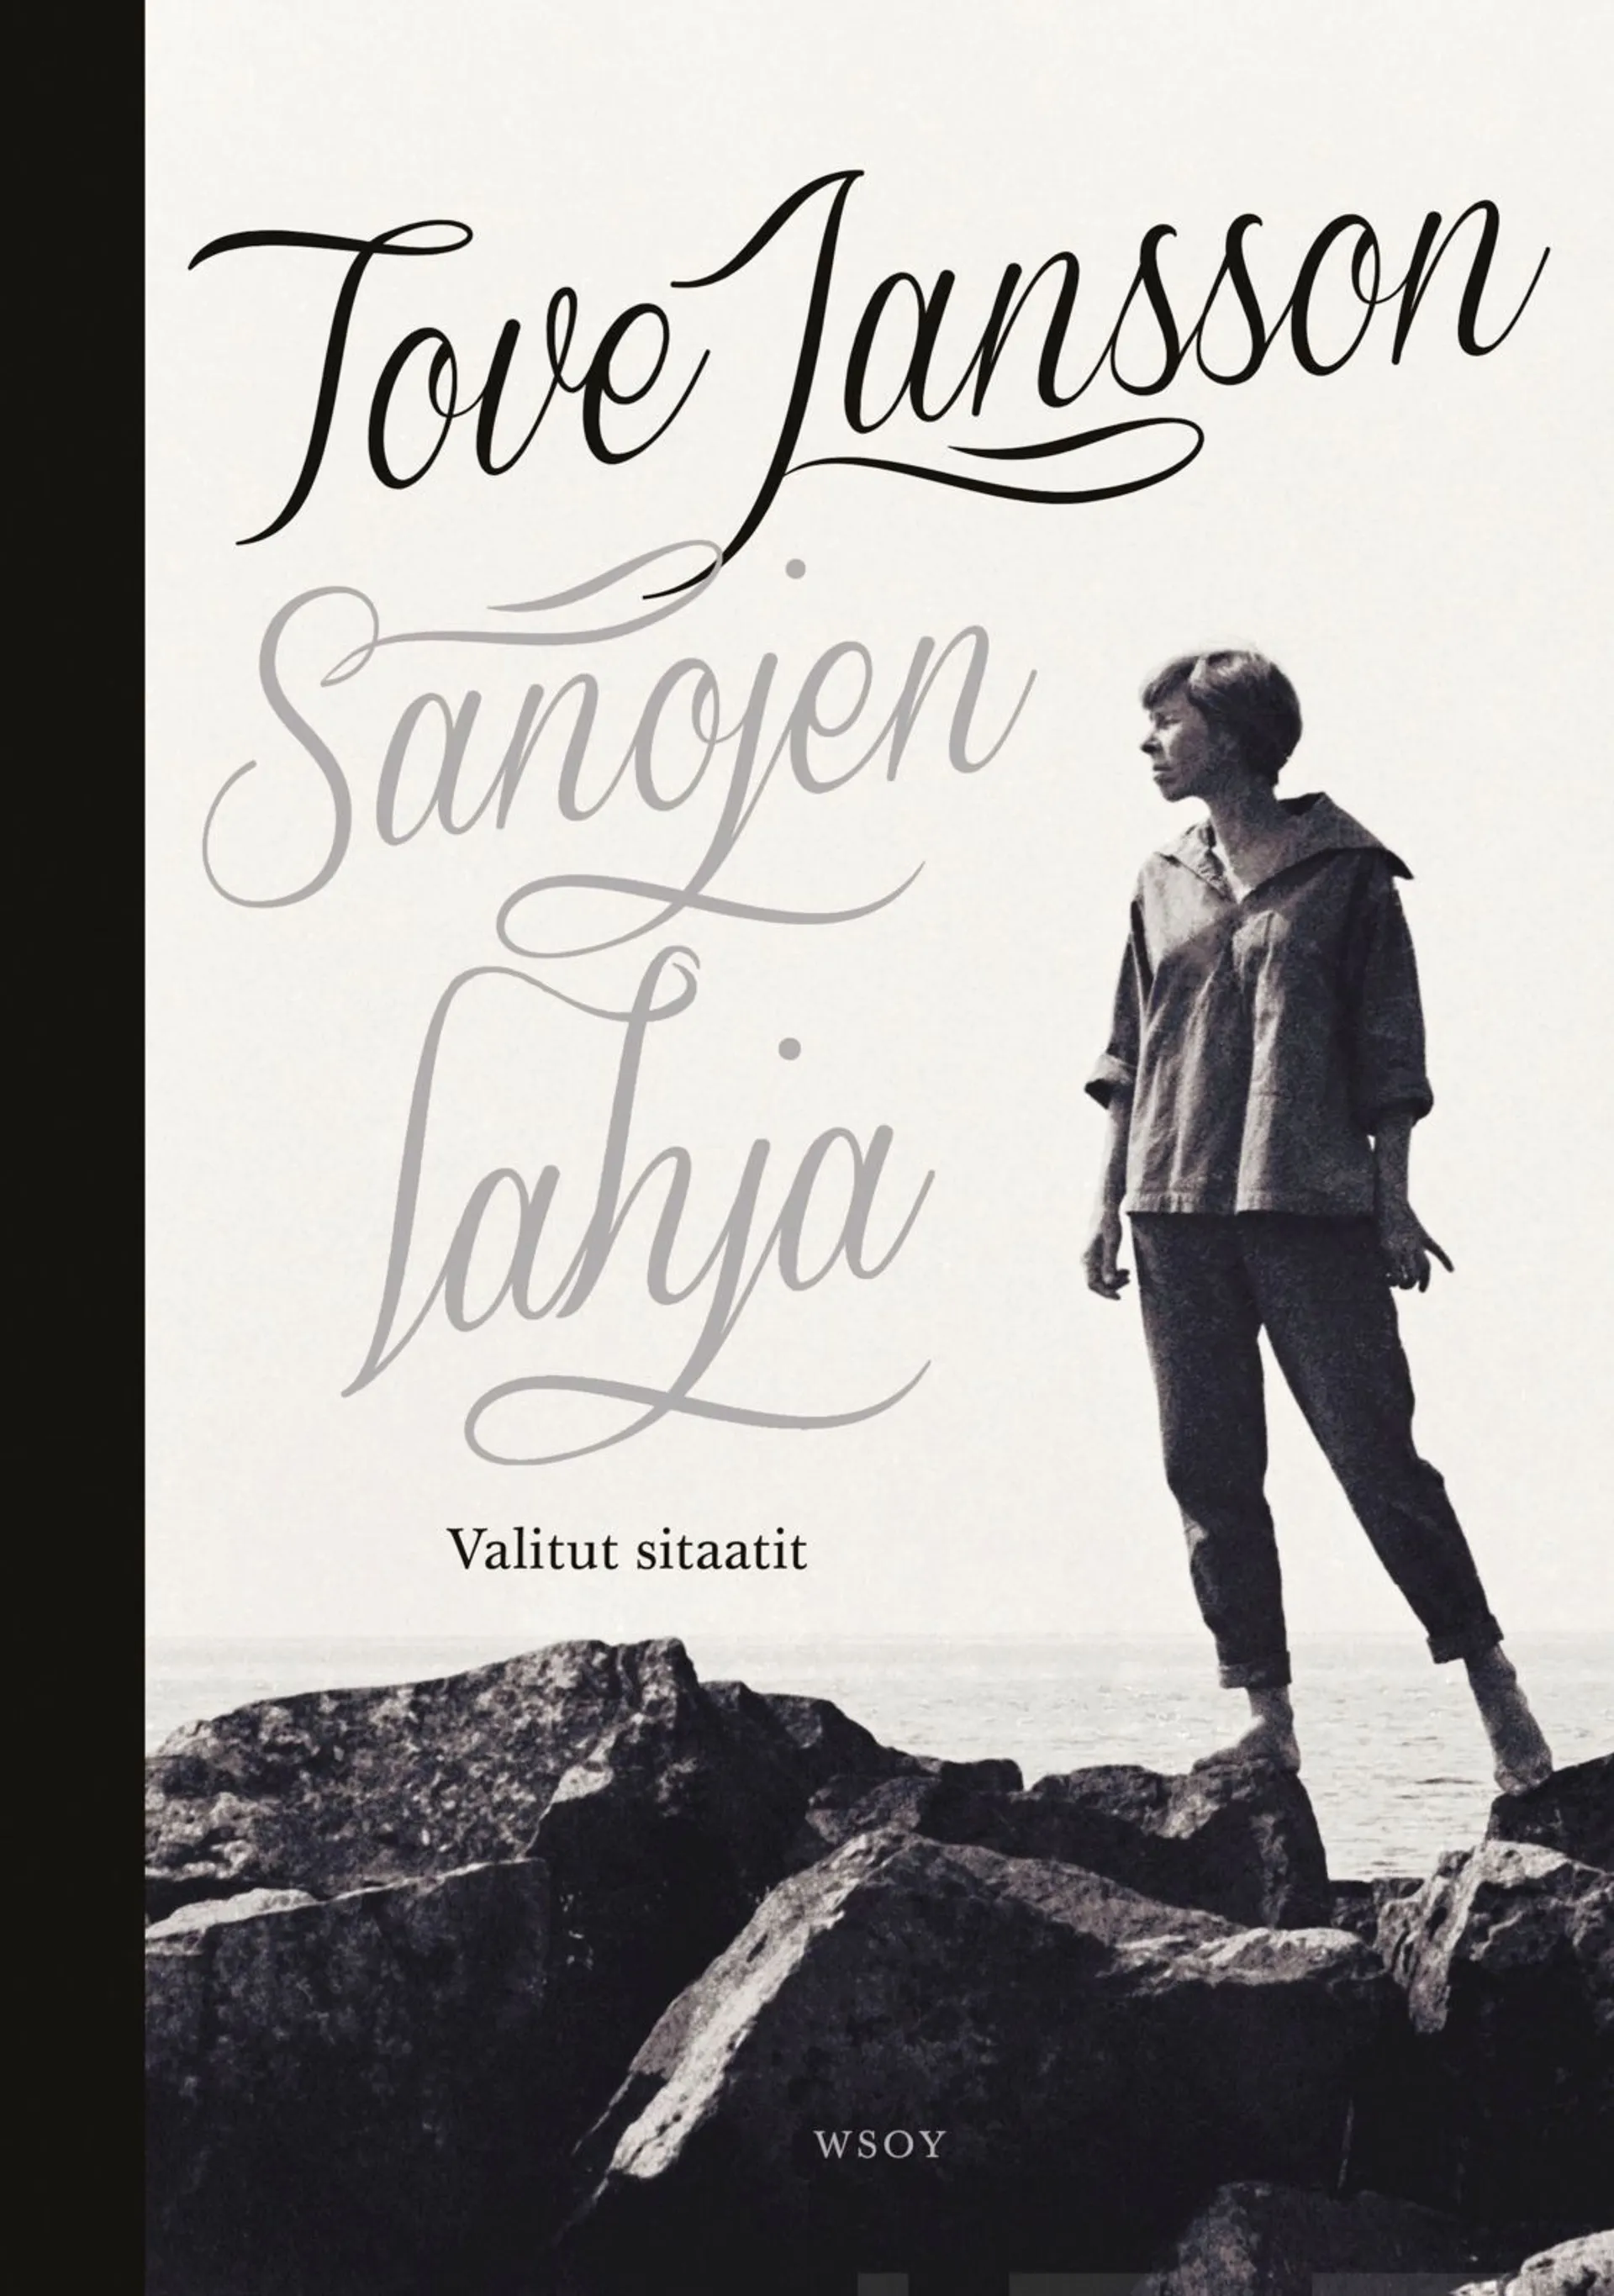 Jansson, Tove Jansson - Sanojen lahja - Valitut sitaatit